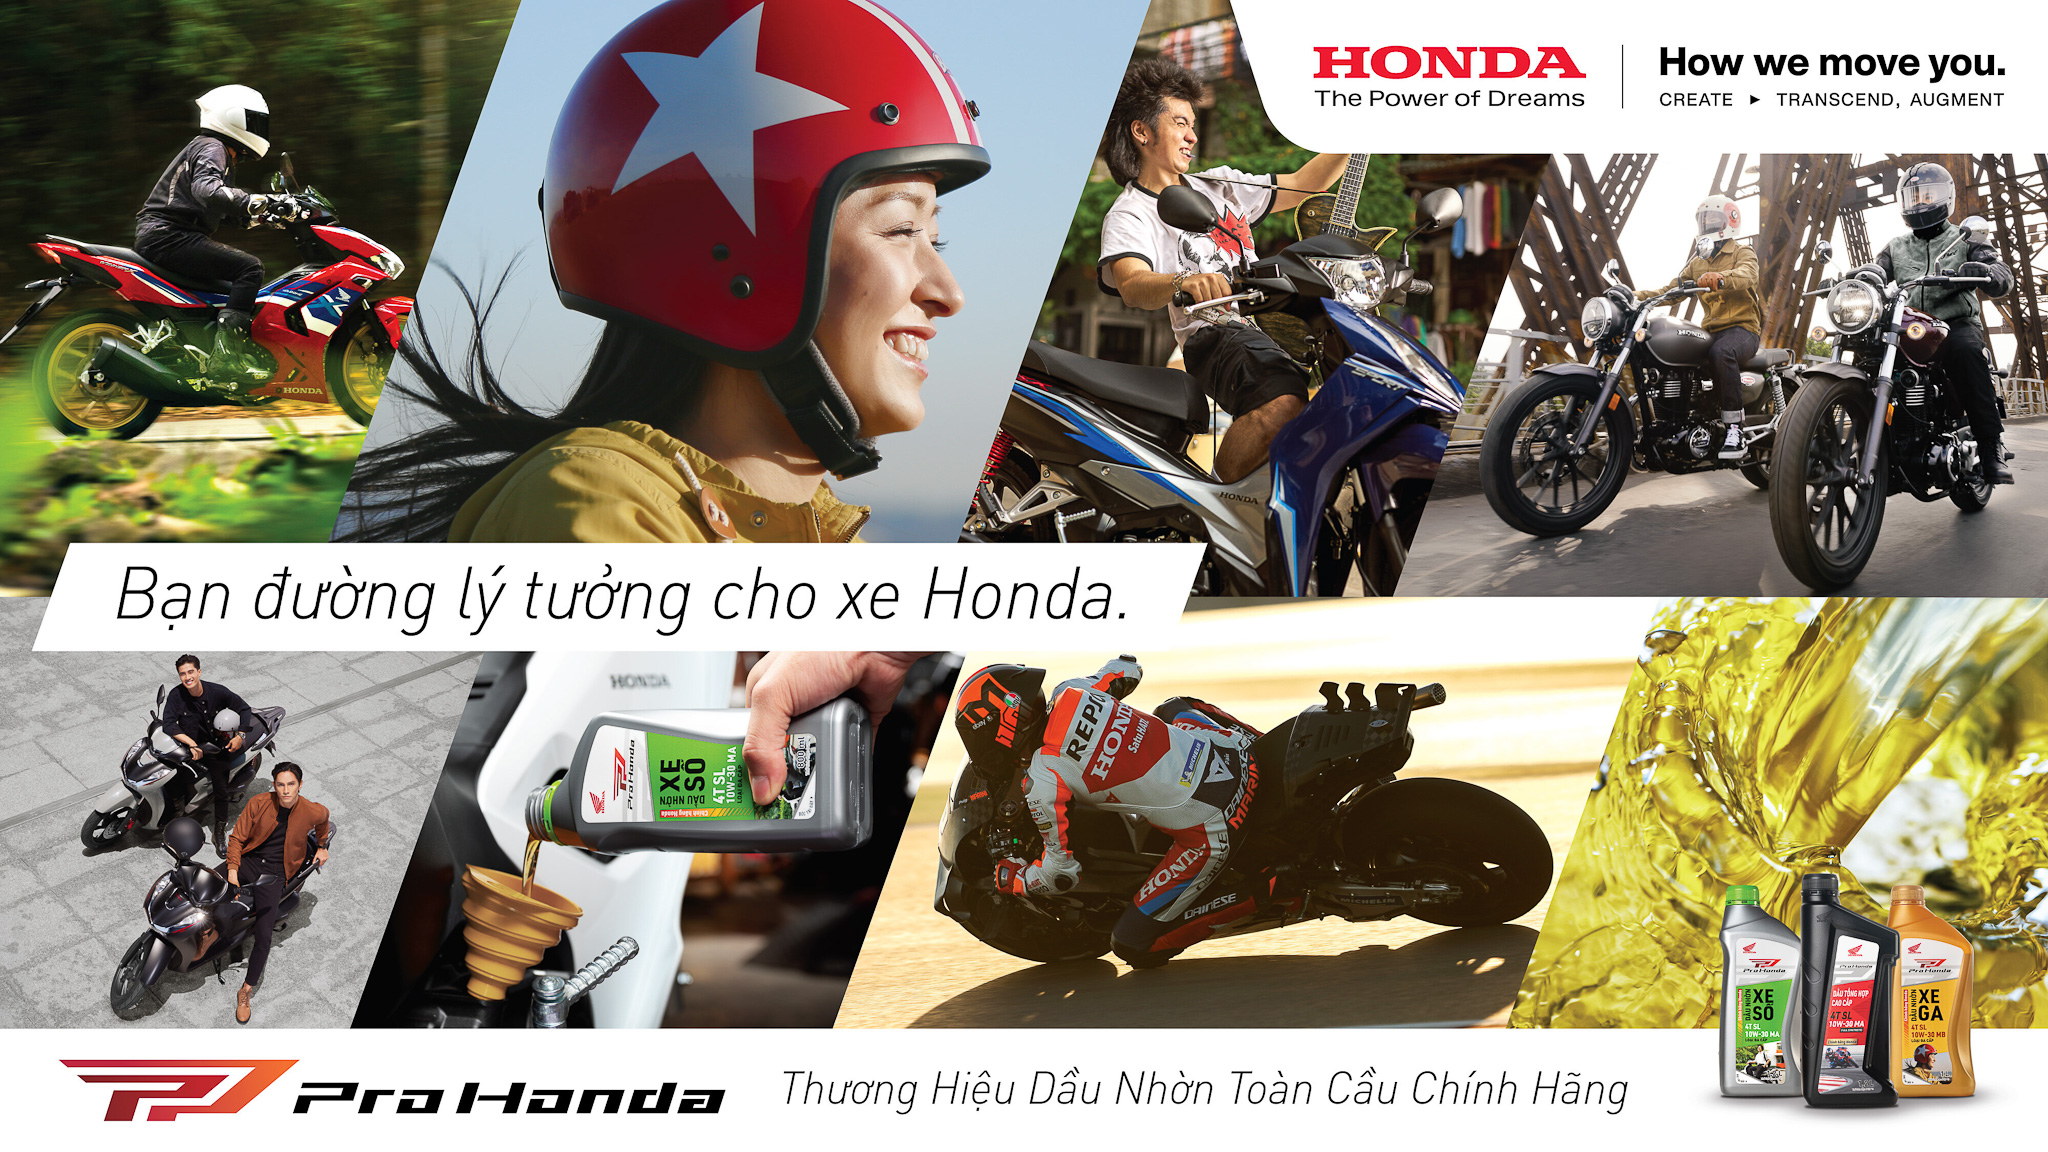 ProHonda dầu nhờn chính hãng bất ngờ được Honda Việt Nam ra mắt